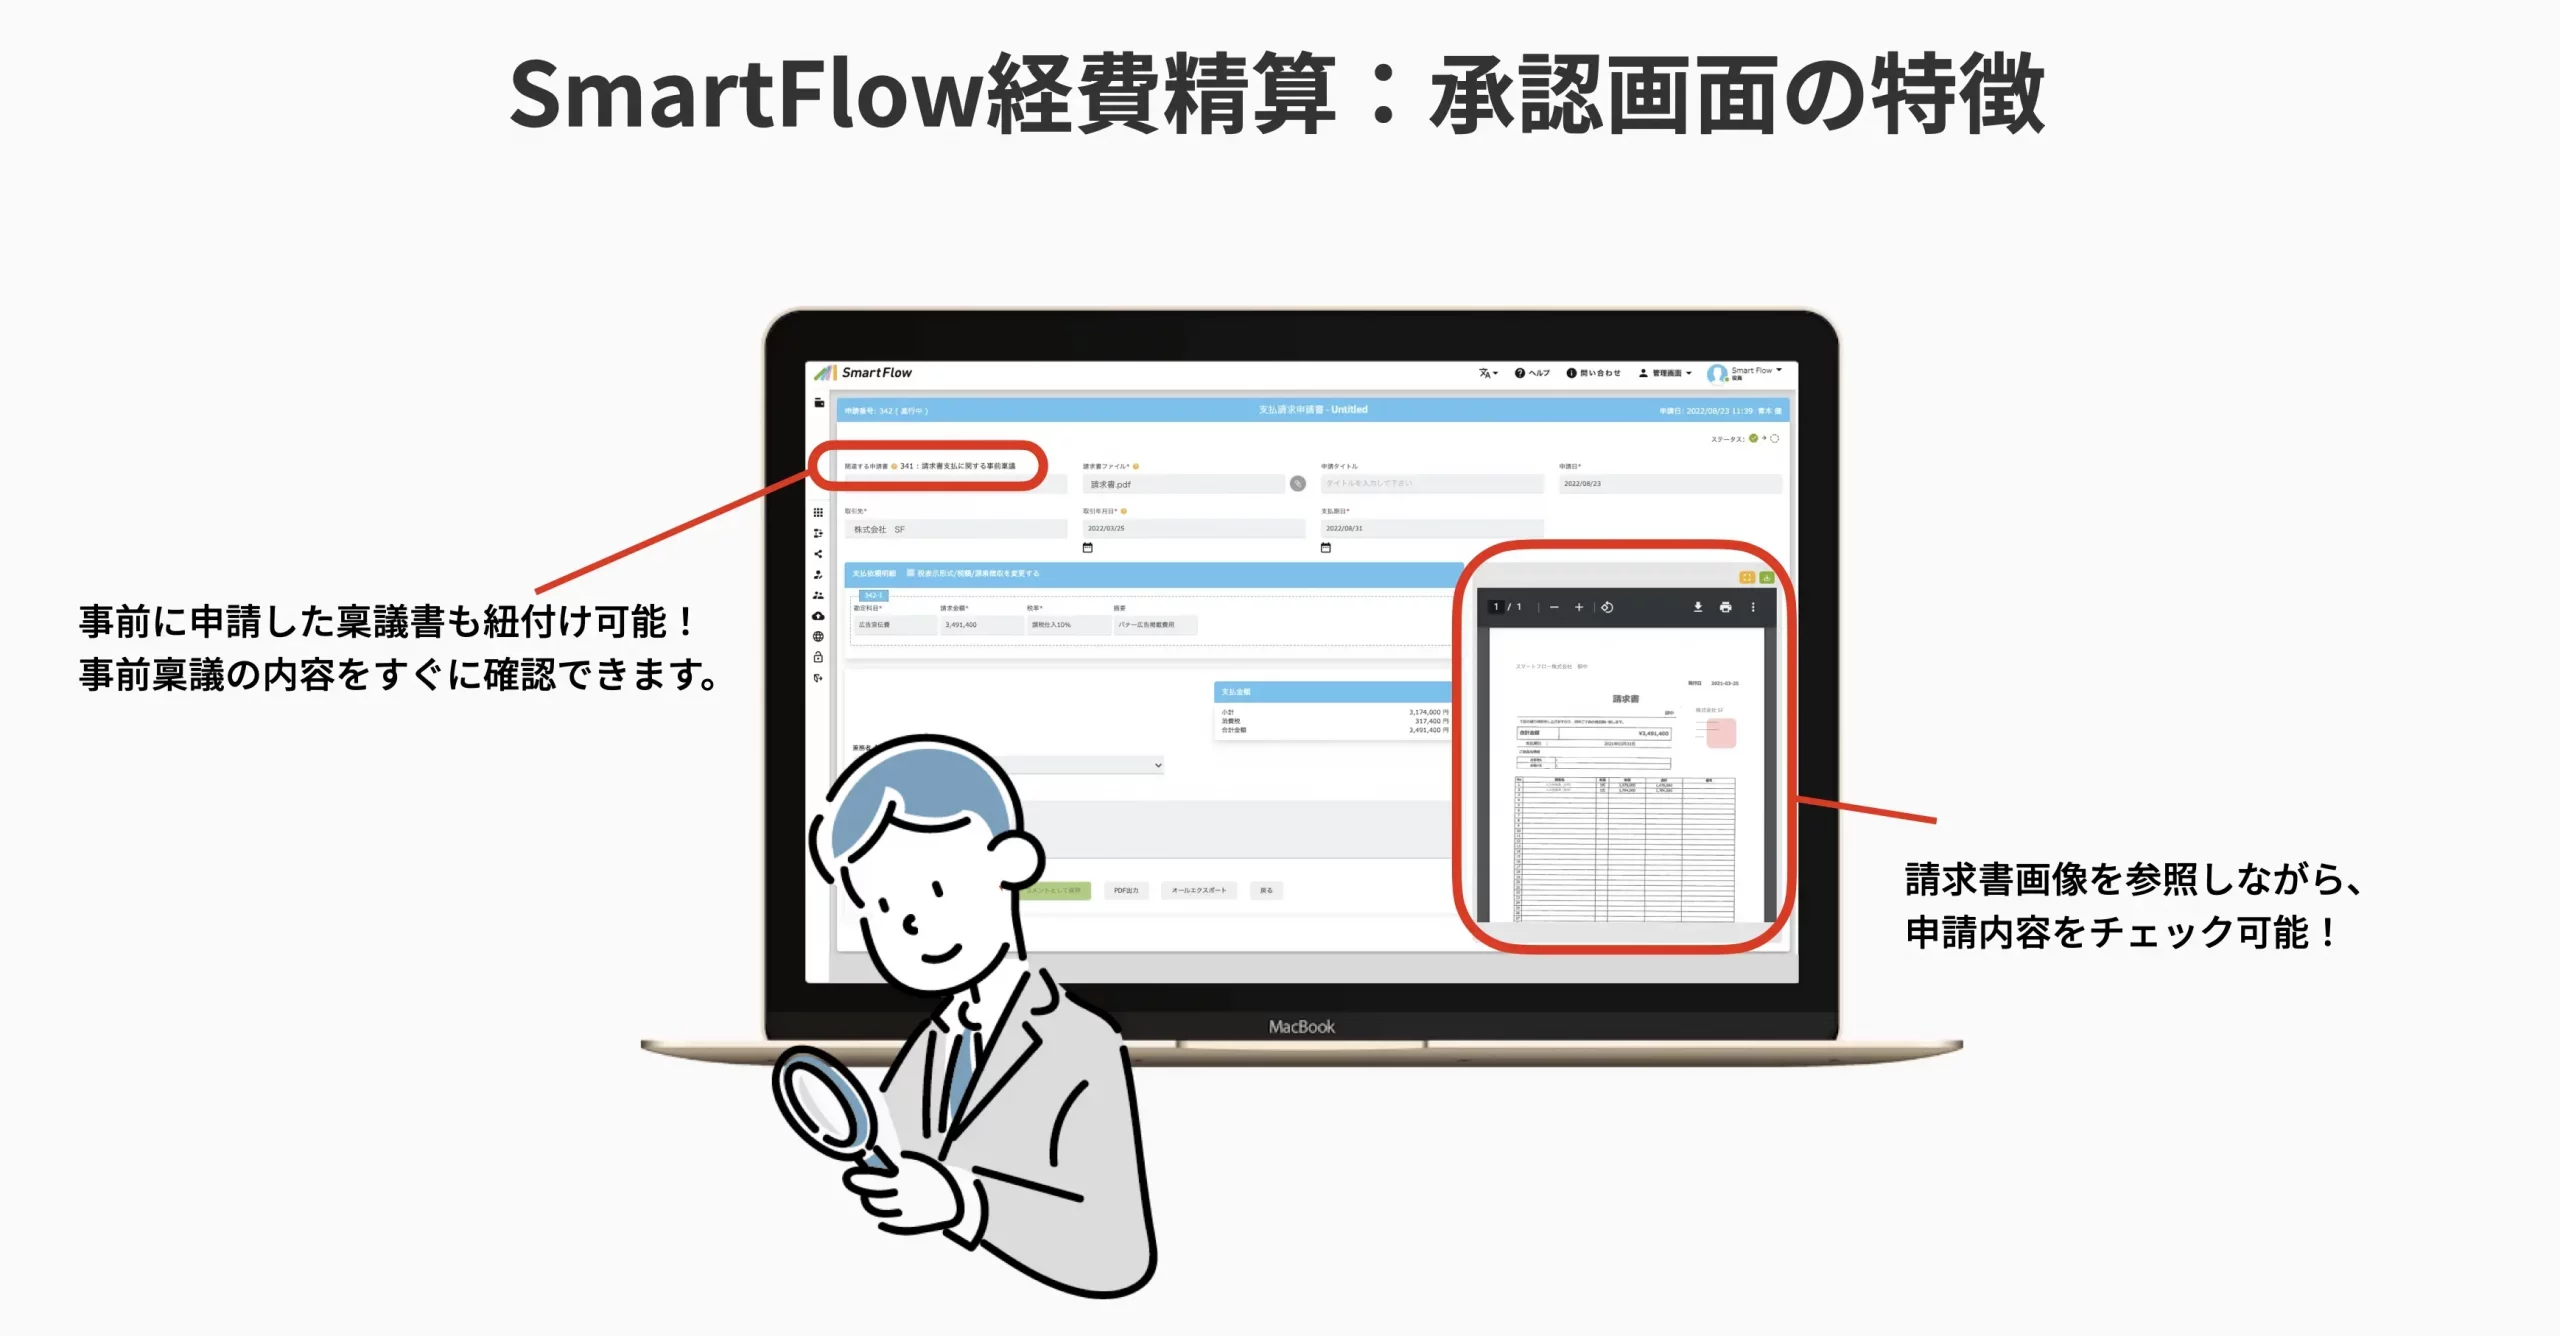 SmartFlow経費精算：承認画面の特徴